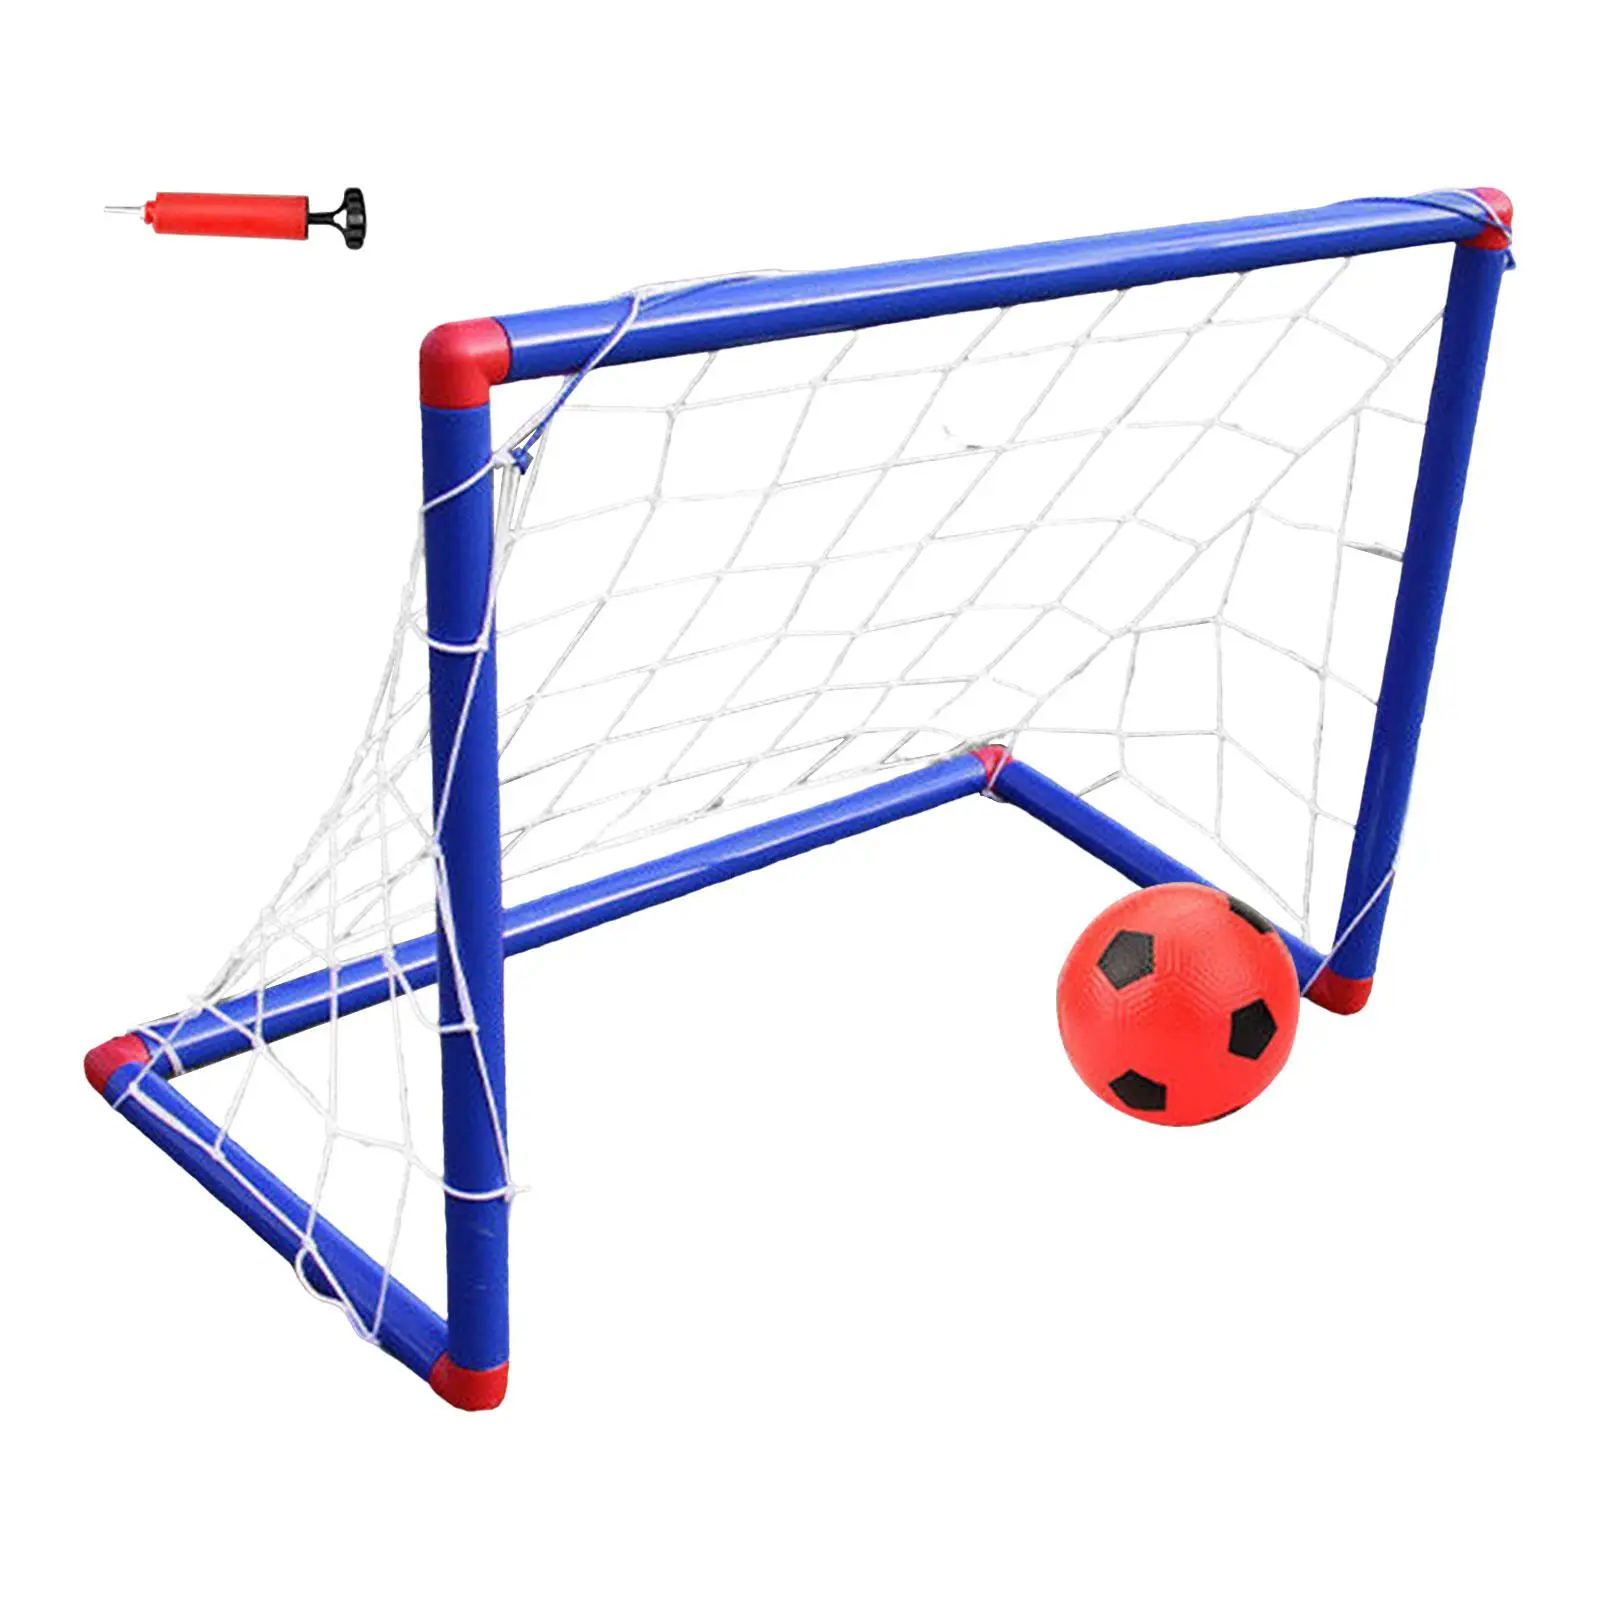 Kids Soccer Goals for Backyard Soccer Goal Post Net and Ball Small Football Goal Net for Yard Garden Outdoor Toys Beach Play